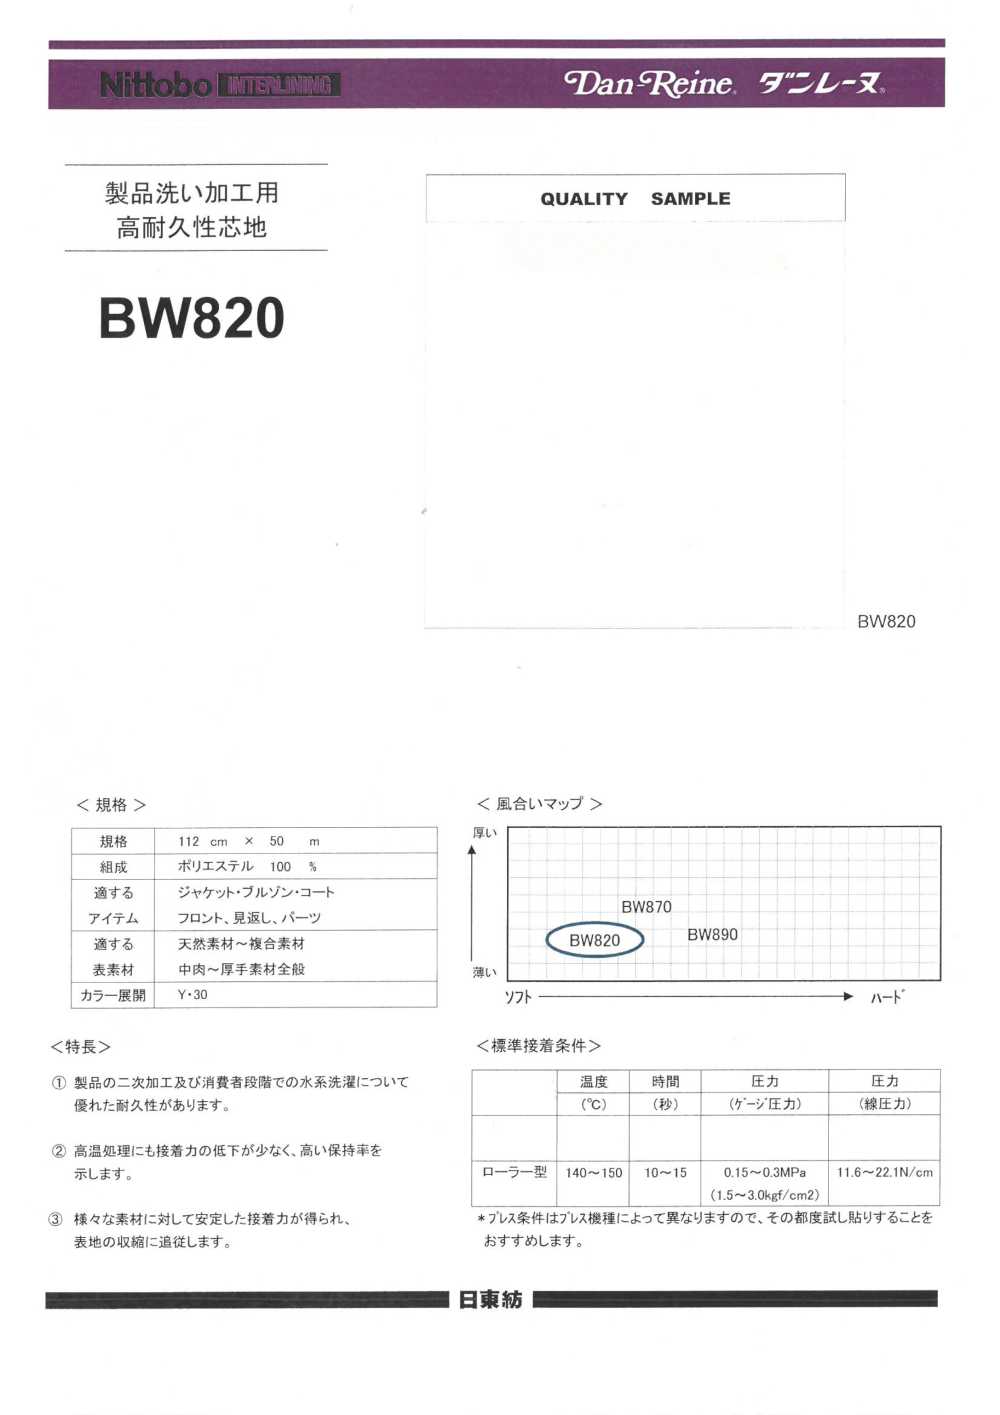 BW820 Gia Công Giặt Sản Phẩm/giặt Bằng Nước Có Lớp Lót Bền (30D)[Xen Kẽ] Nittobo